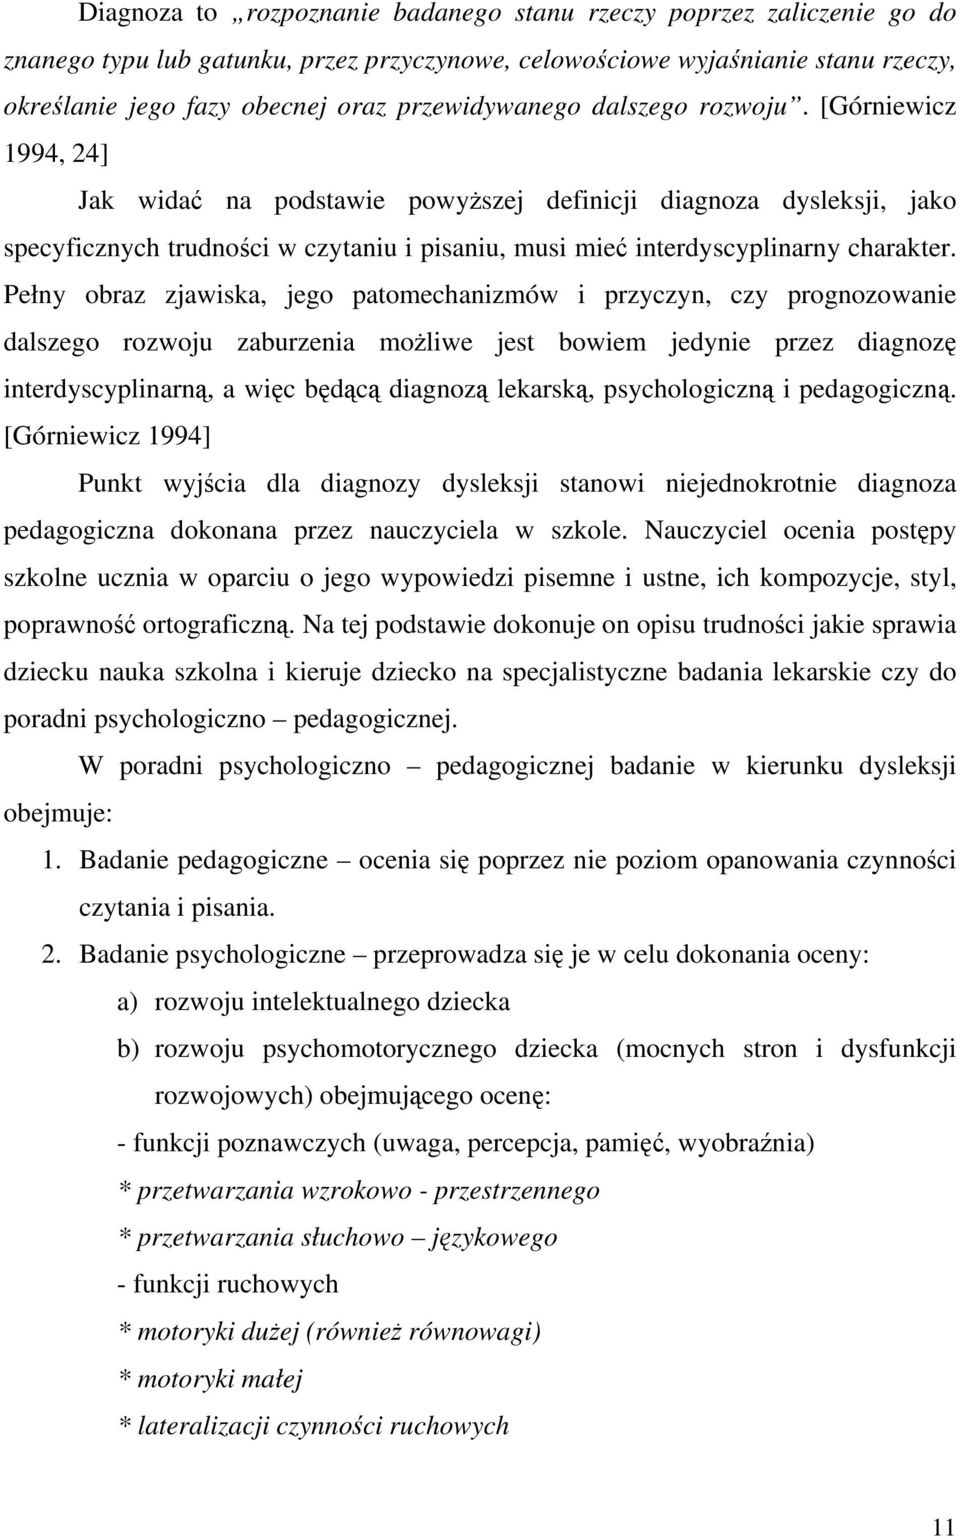 [Górniewicz 1994, 24] Jak widać na podstawie powyższej definicji diagnoza dysleksji, jako specyficznych trudności w czytaniu i pisaniu, musi mieć interdyscyplinarny charakter.